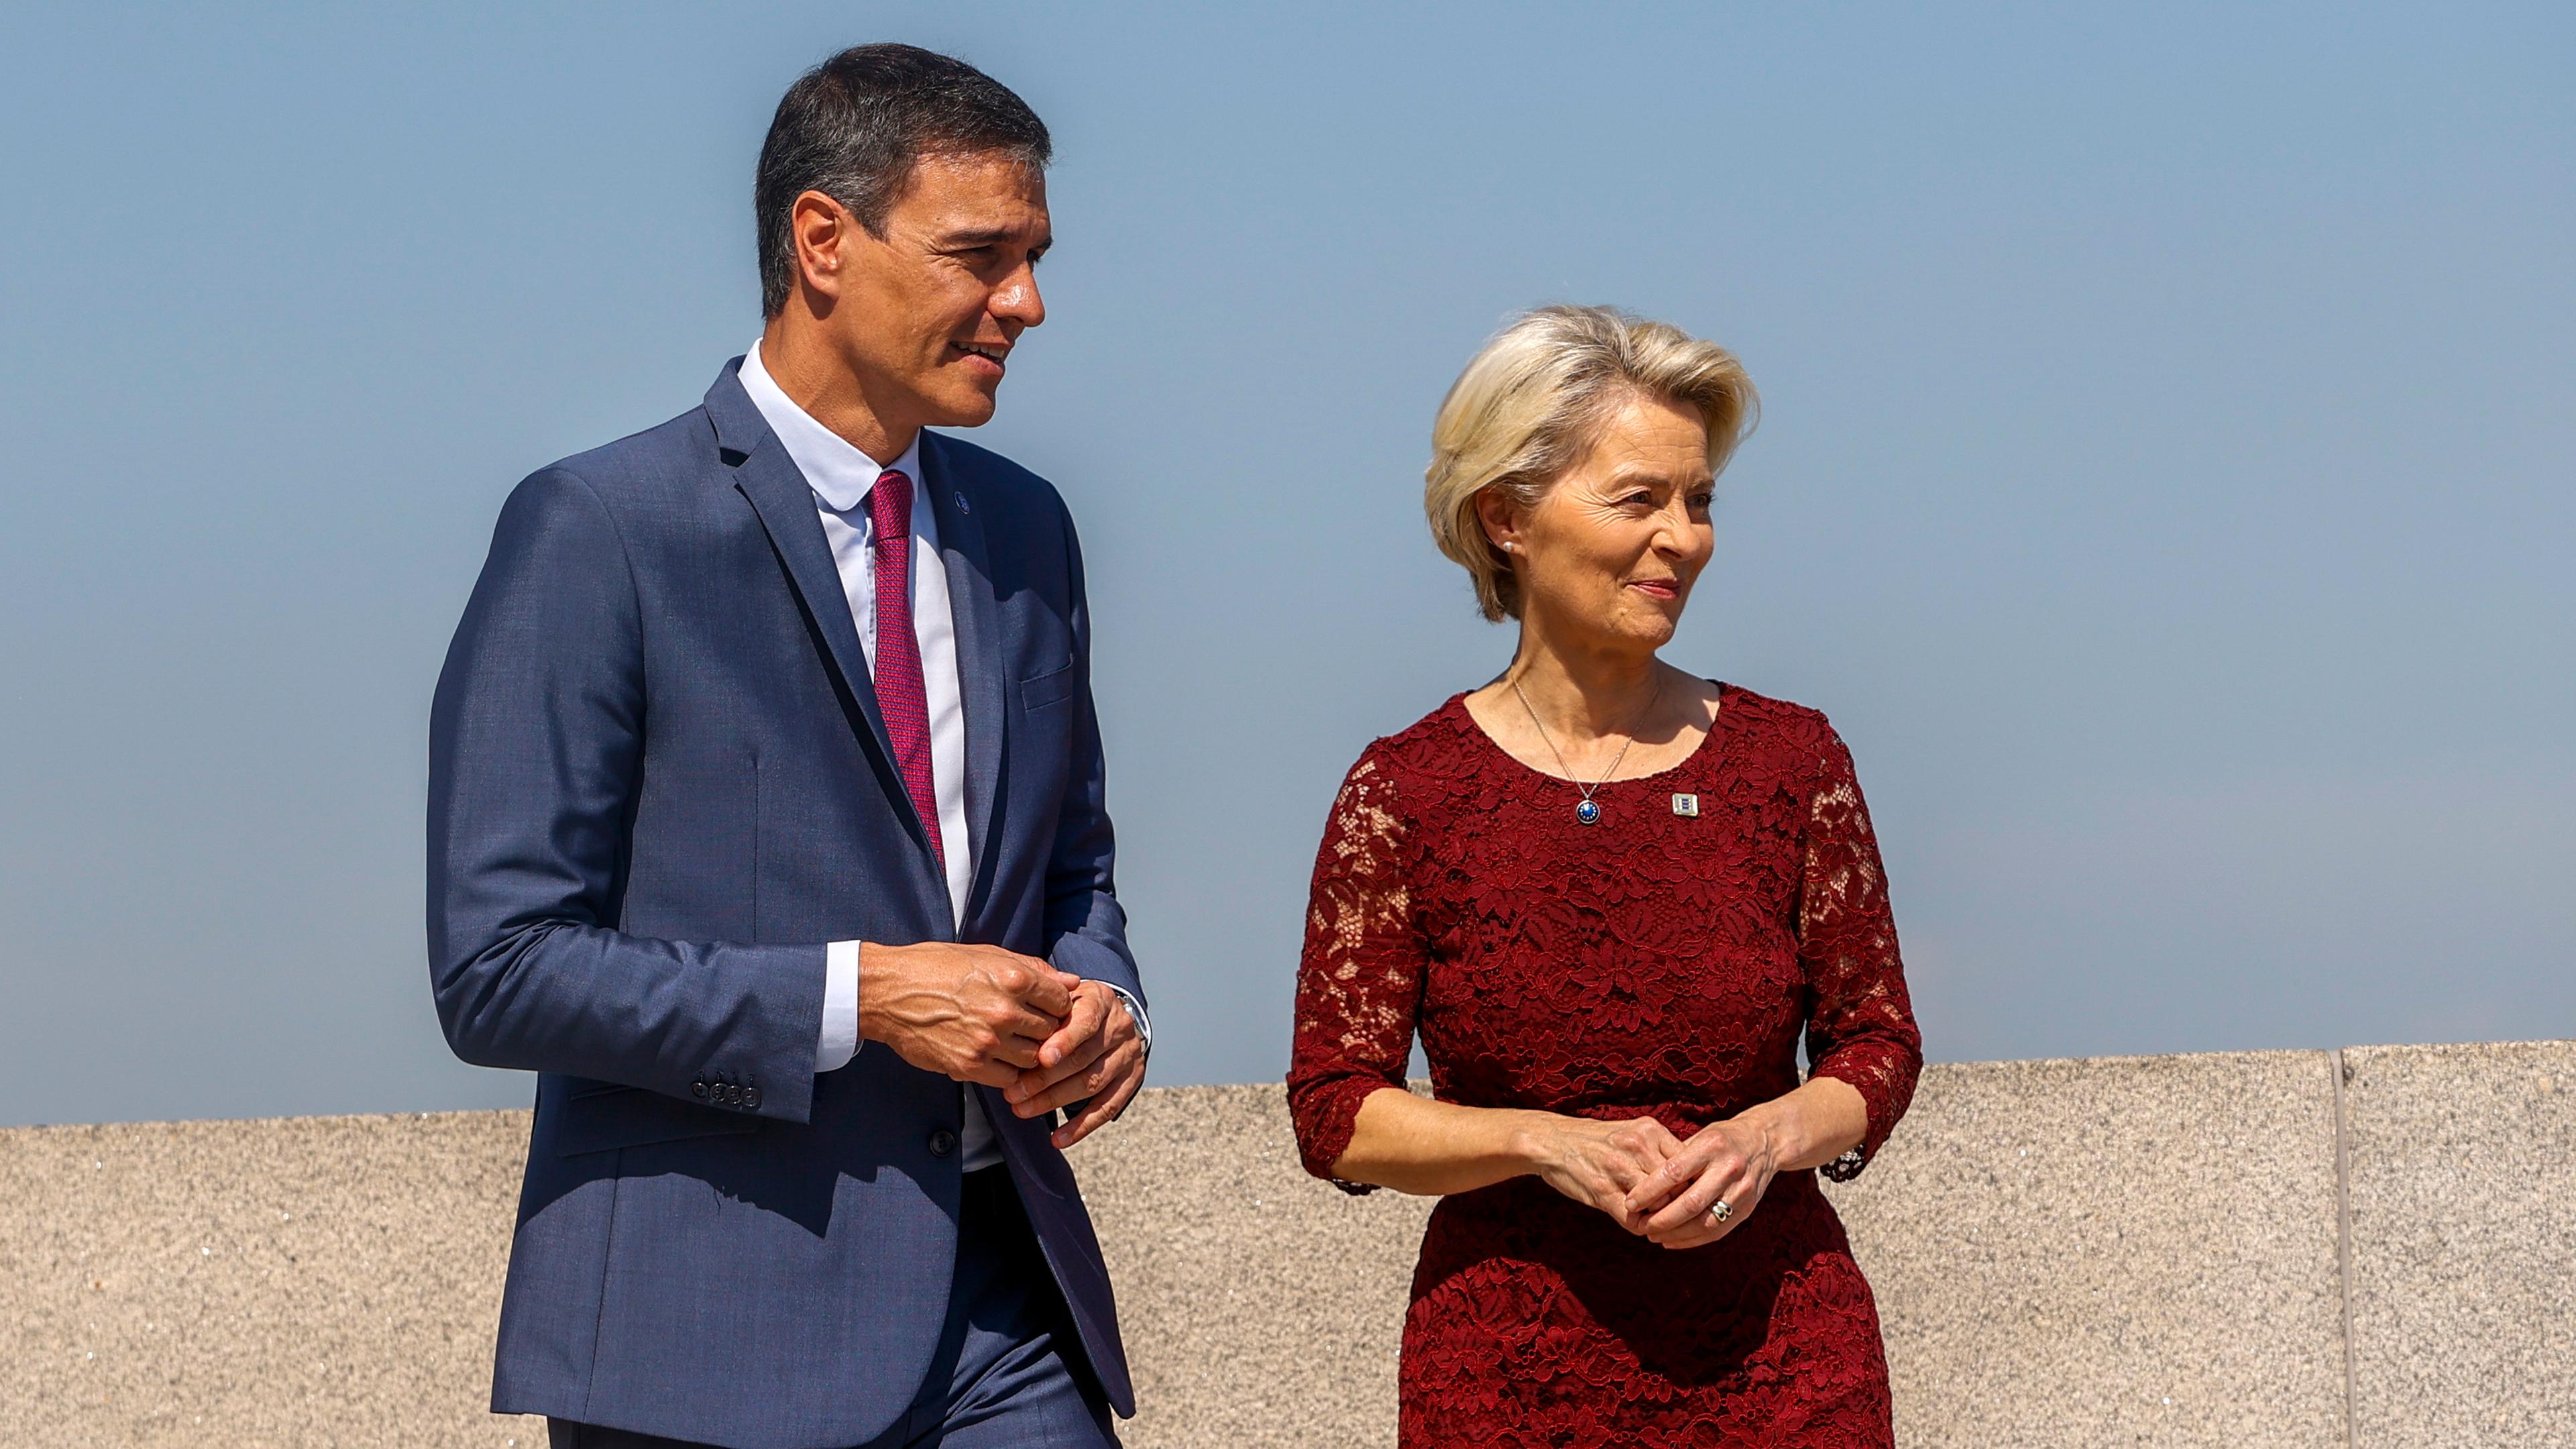 In Madrid hat der spanische Ministerpräsident bei Beginn seiner EU-Ratspräsidntschaft, die EU-Kommissionspräsidentin Ursula von der Leyen getroffen.